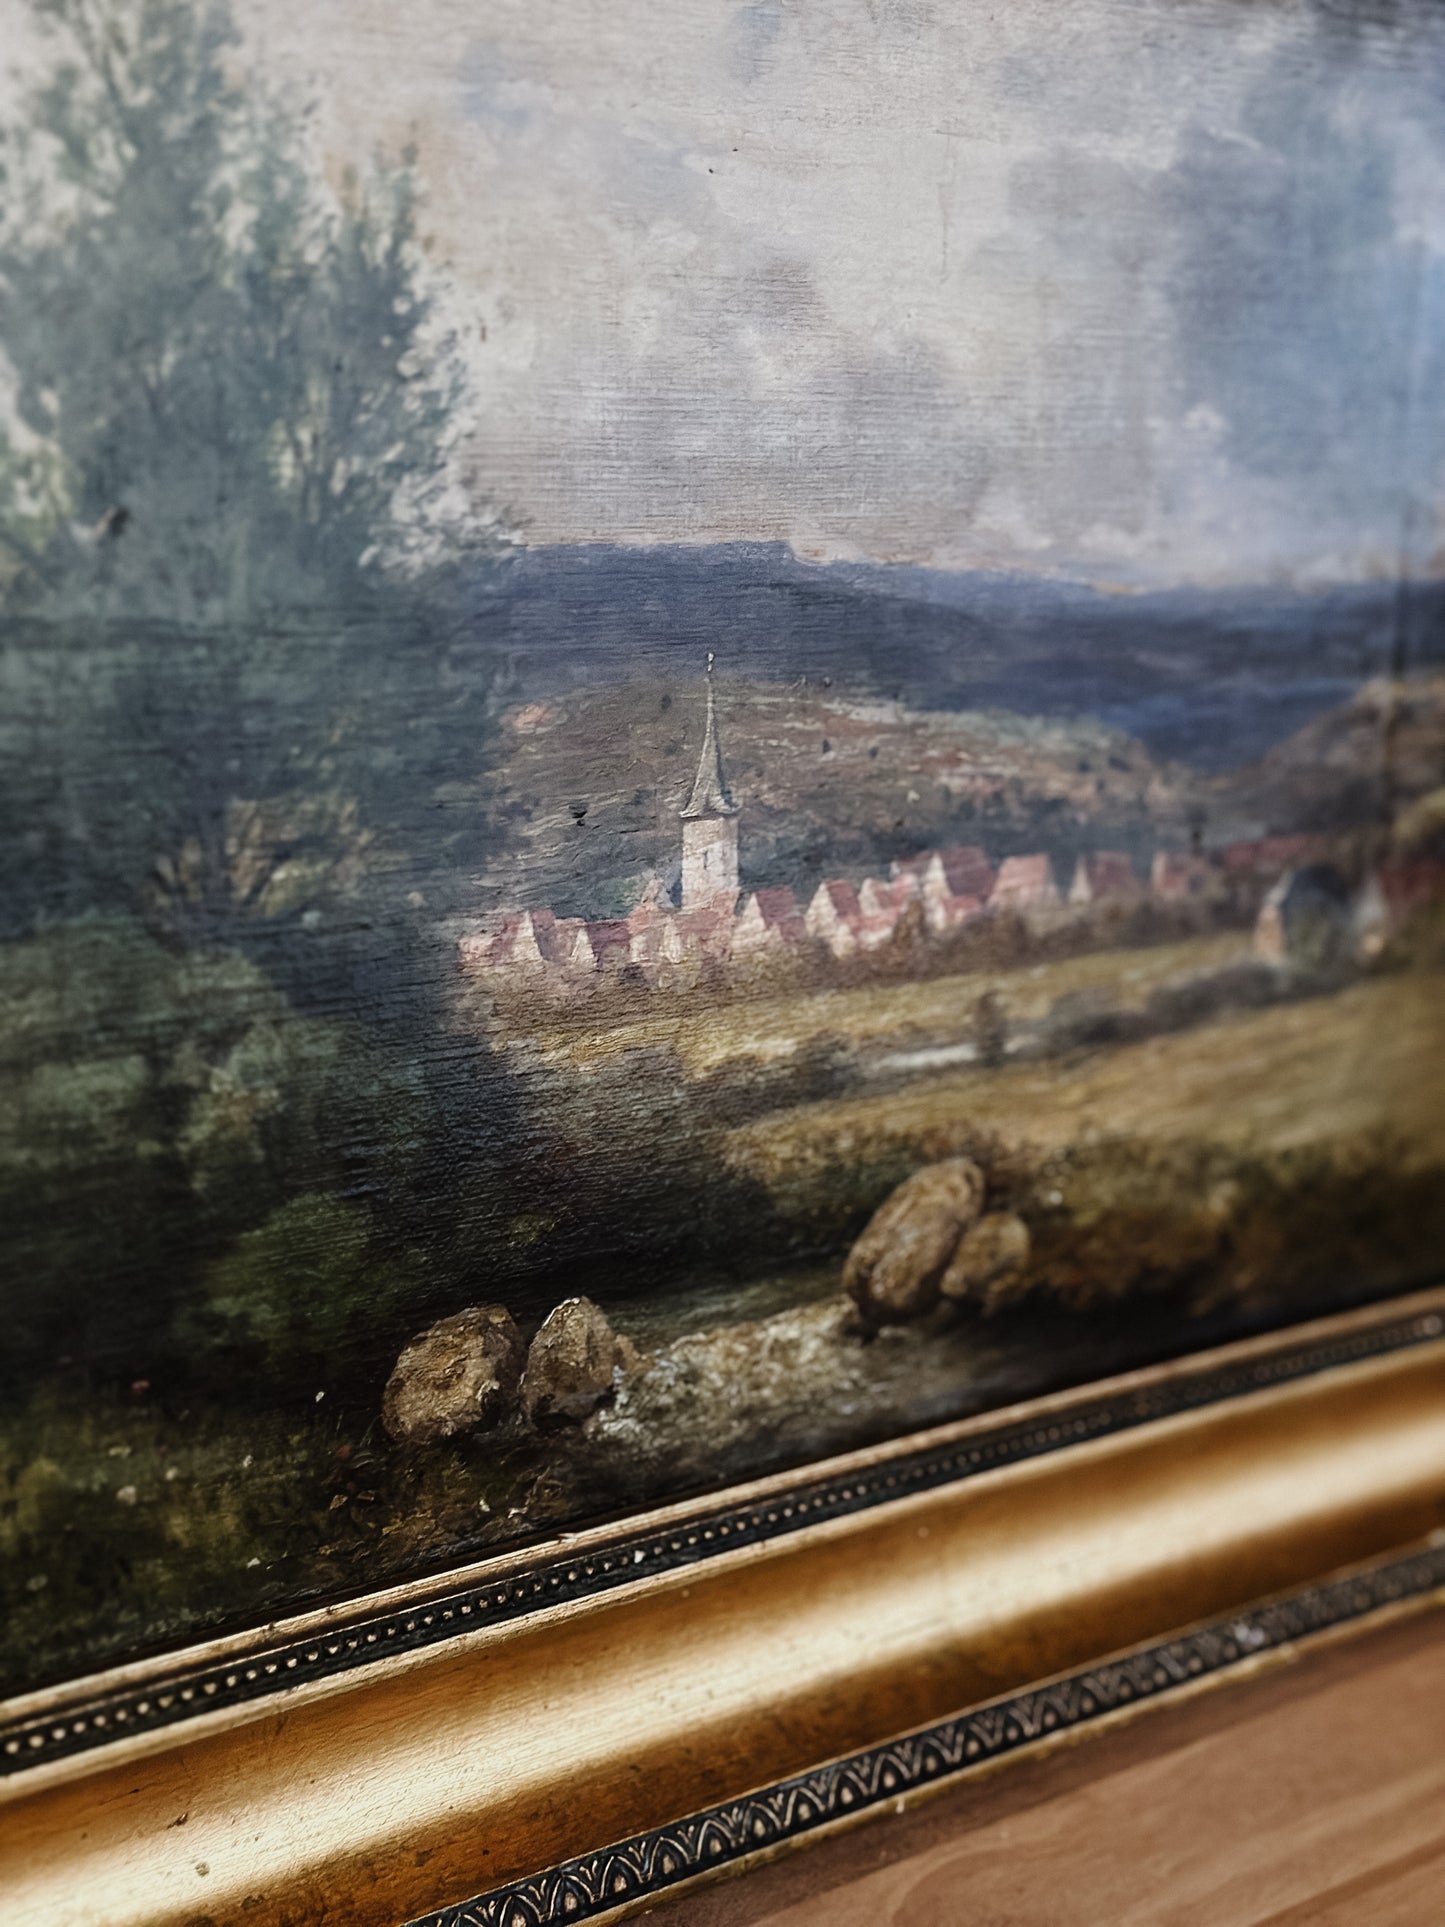 Original Antique European Oil Painting